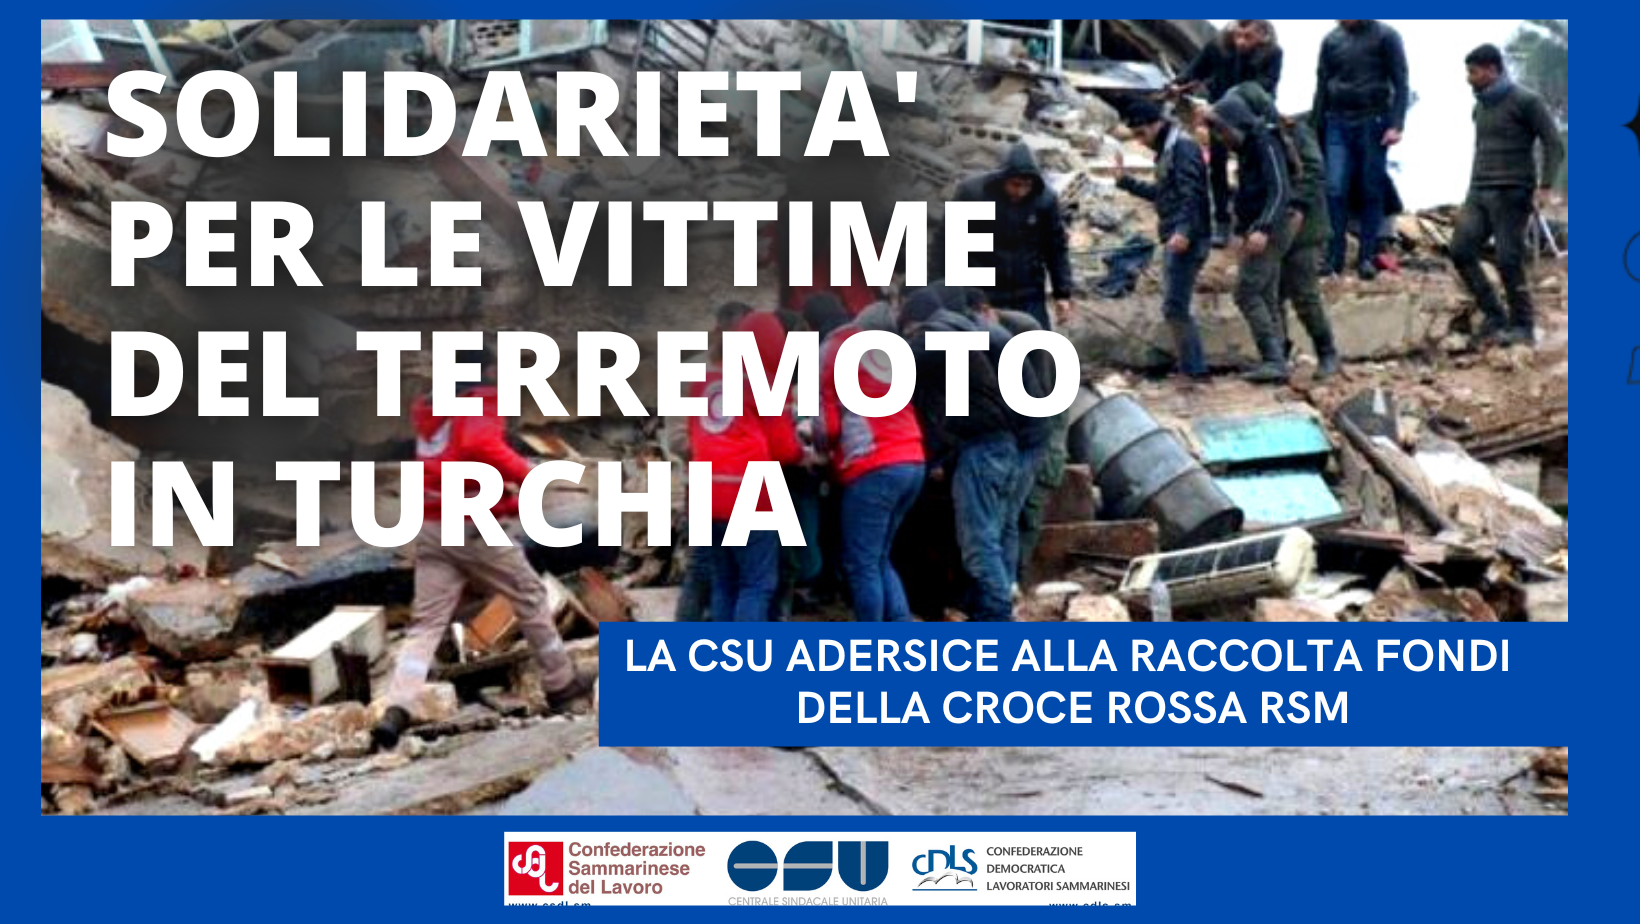 San Marino. Solidarietà per le vittime del terremoto in Turchia: la CSU aderisce alla raccolta fondi della CRS